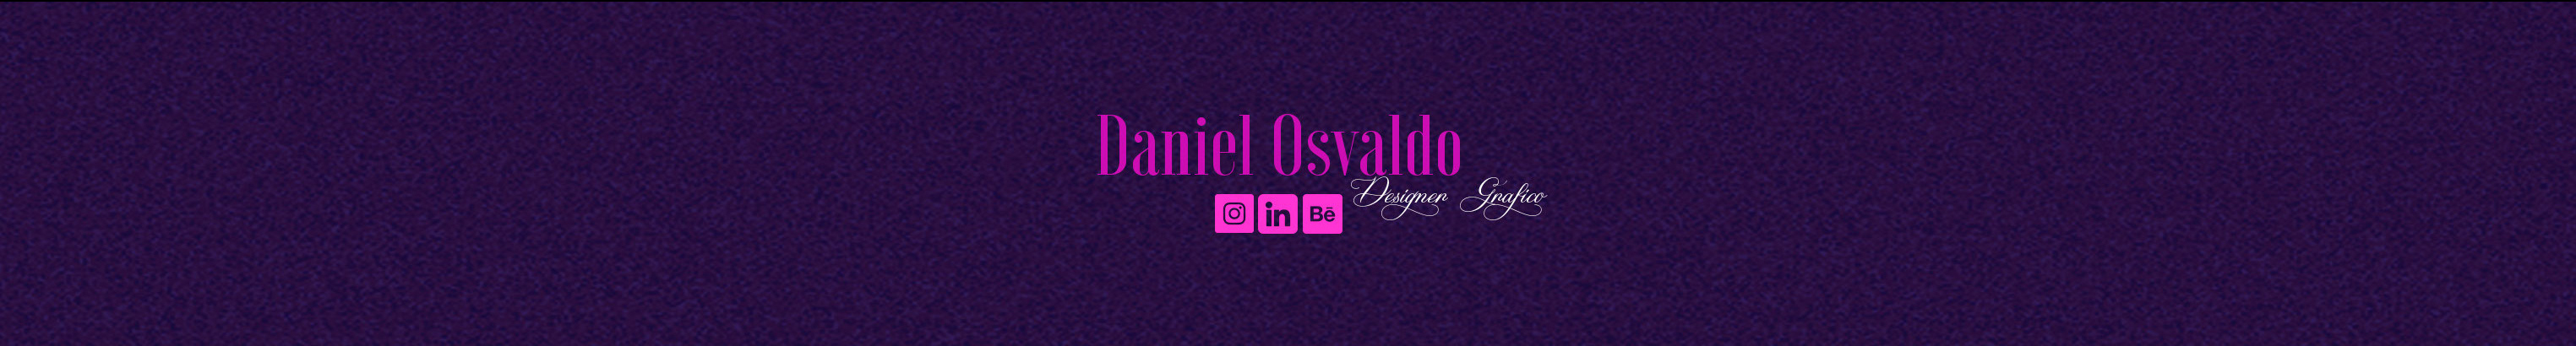 Daniel Osvaldo's profile banner